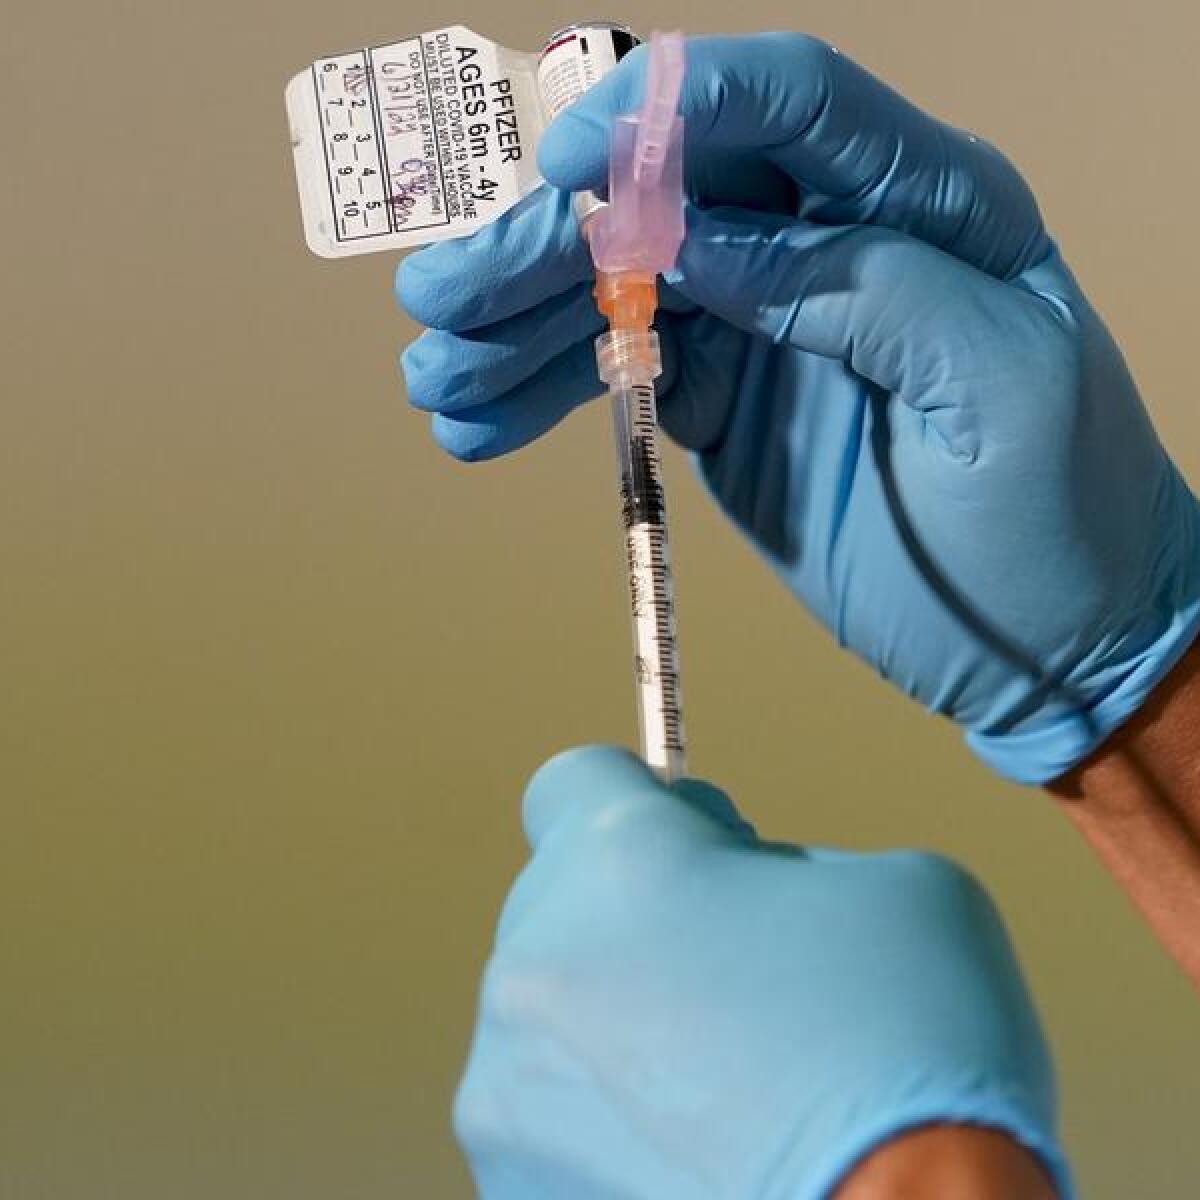 A nurse preparing a COVID-19 vaccine shot